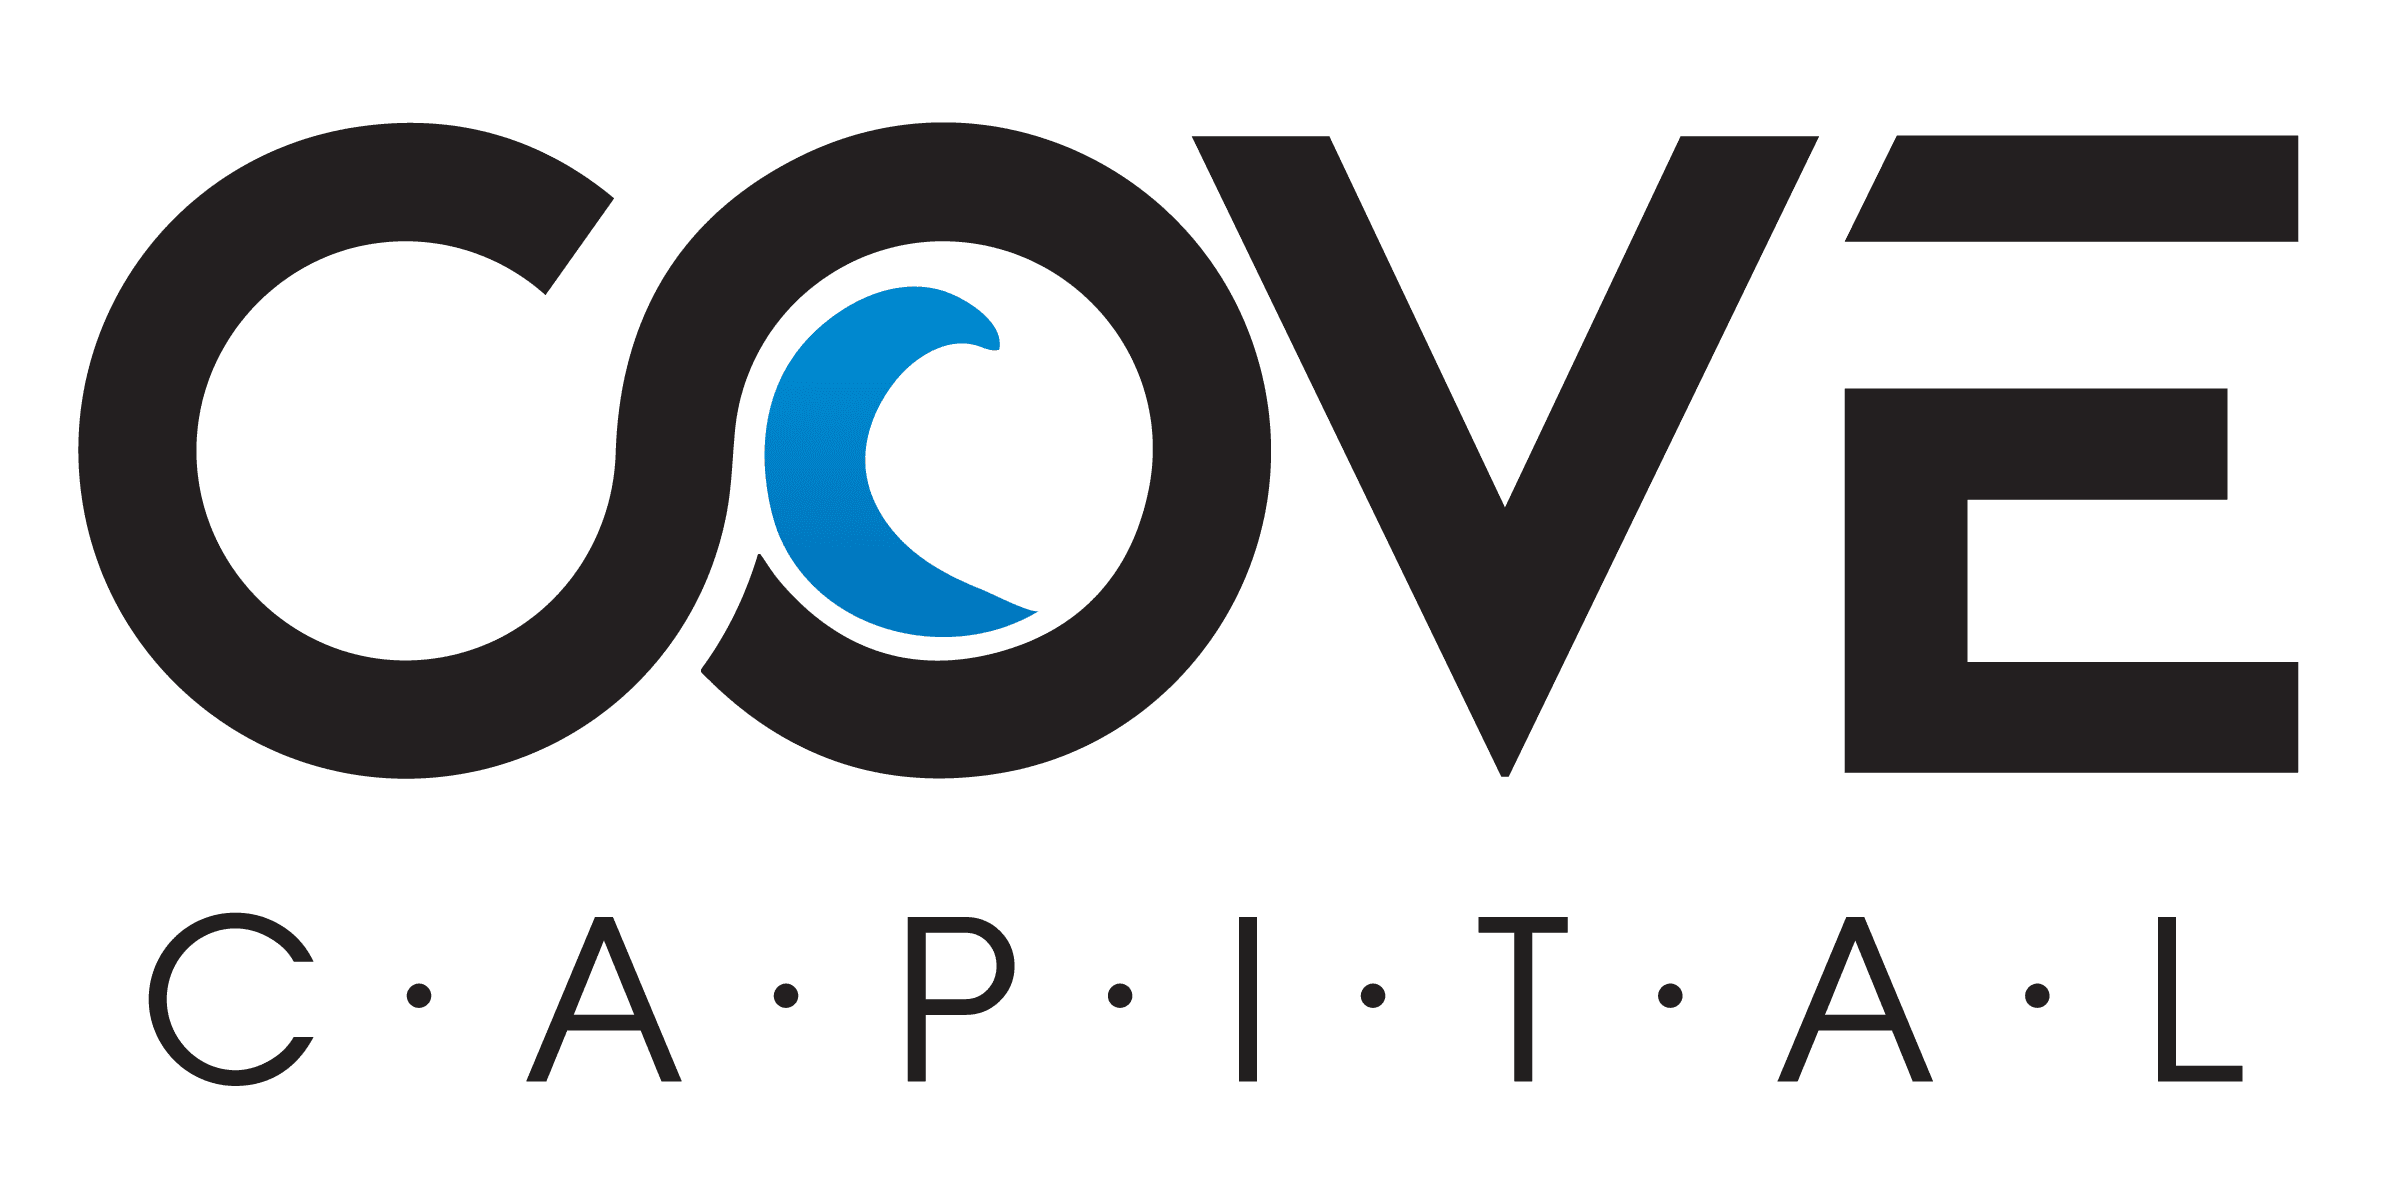 Cove Capital